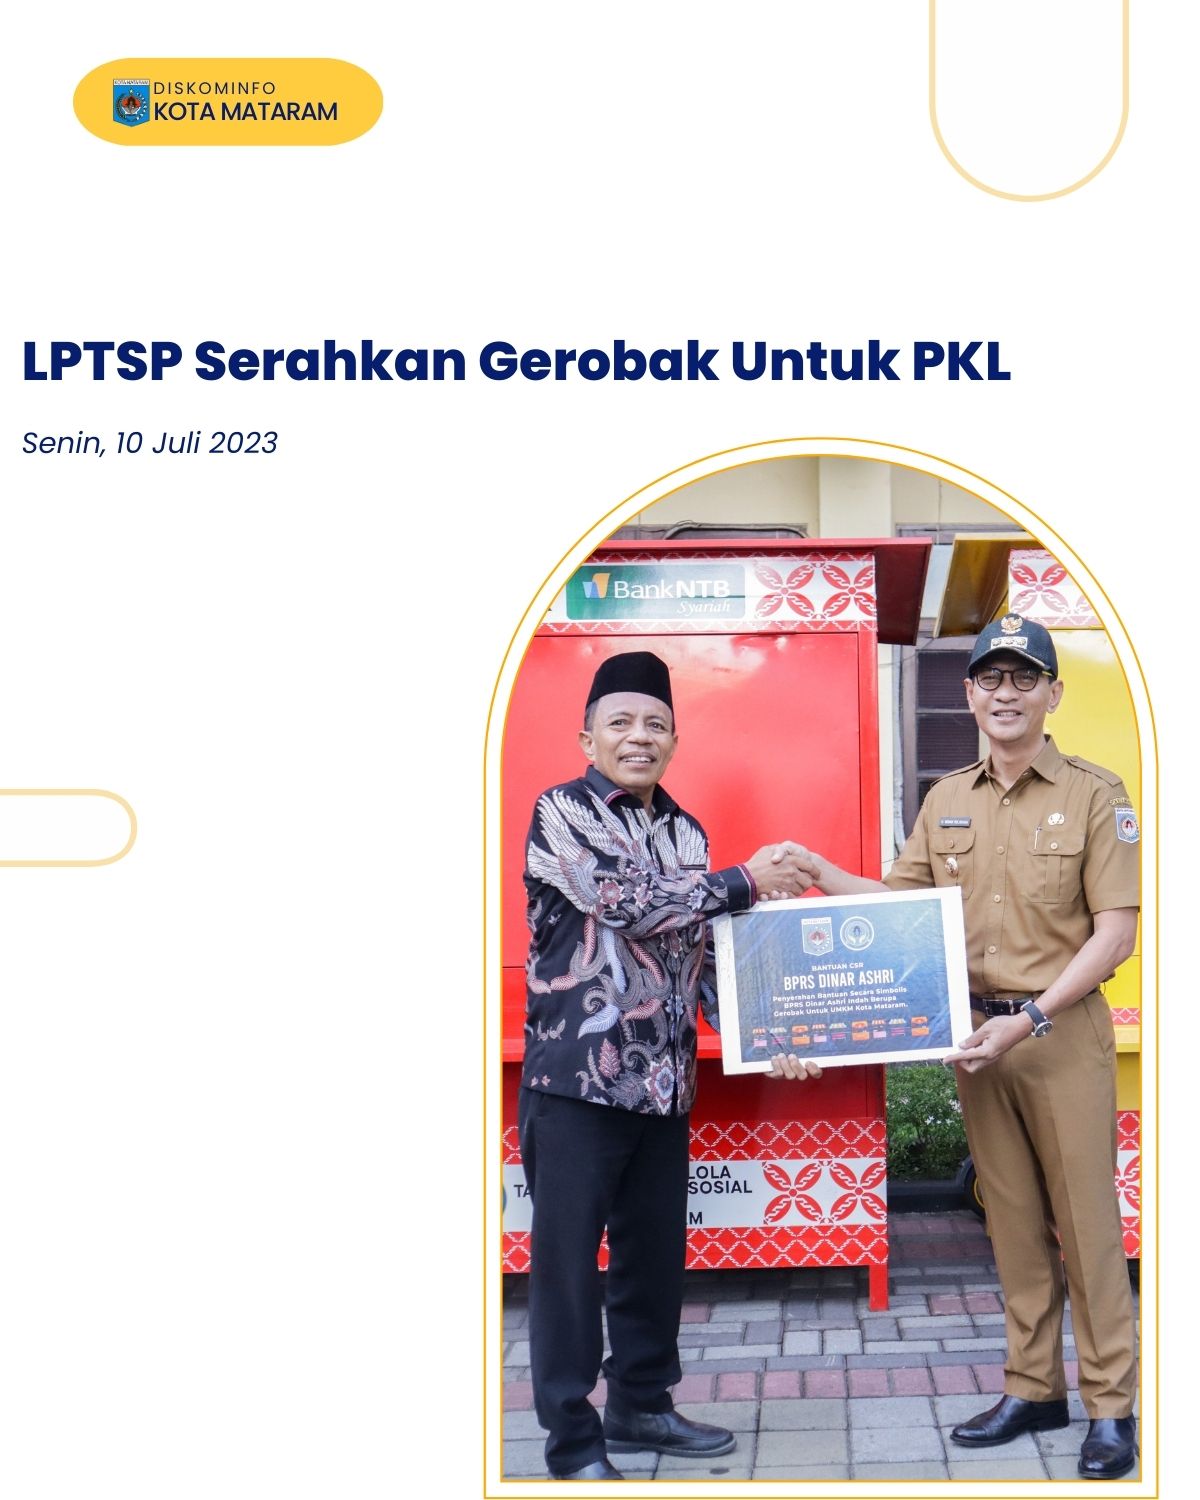 LPTSP Serahkan Gerobak Untuk PKL